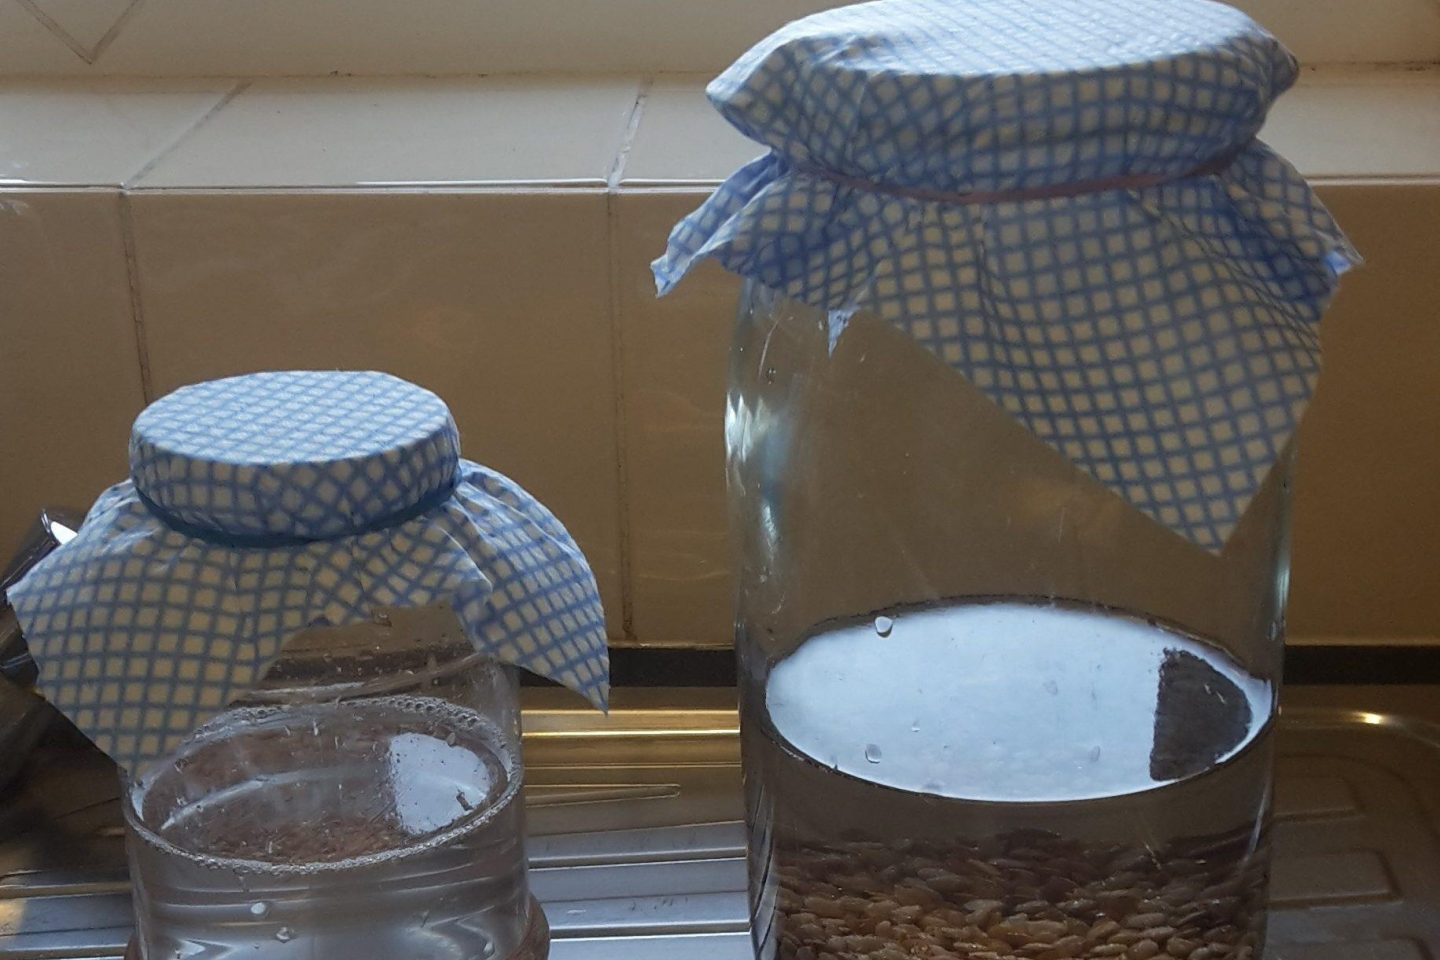 Seeds soaking in jars